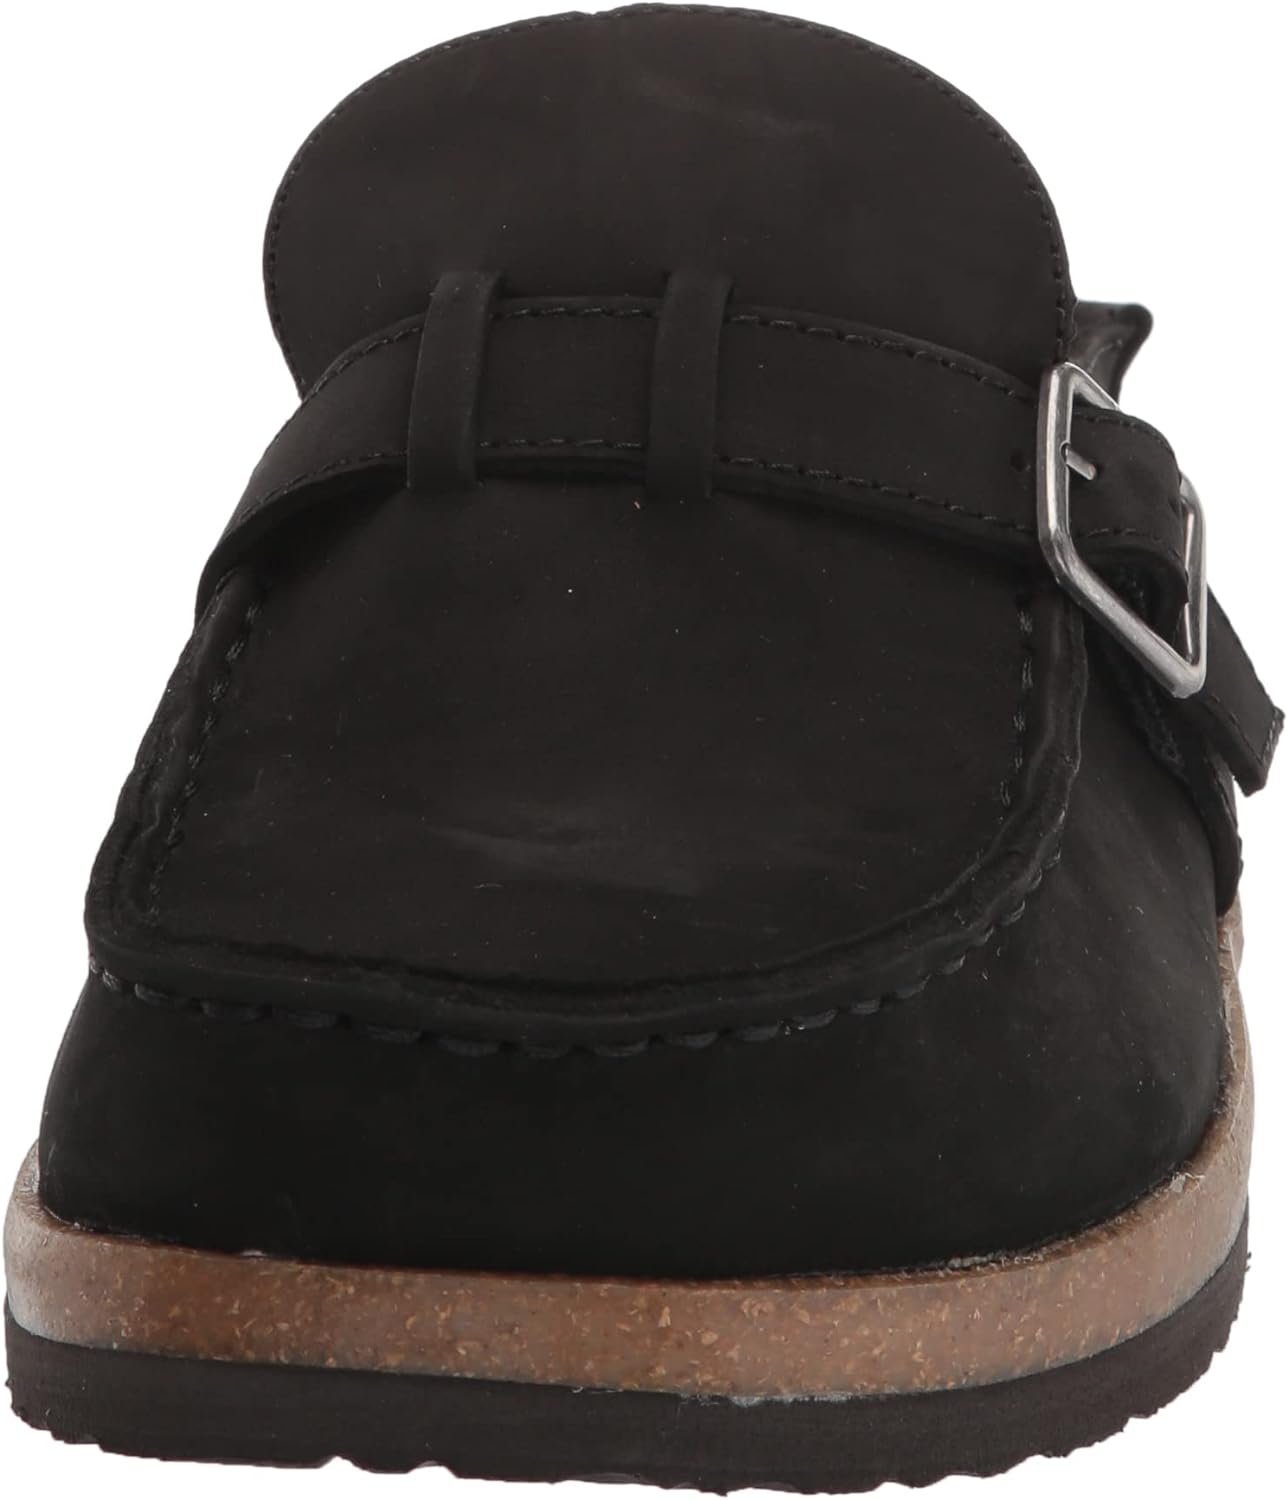 WHITE MOUNTAIN Shoes Bayhill Leather Footbeds Clog(Black/Nubuk) - WHITE ...